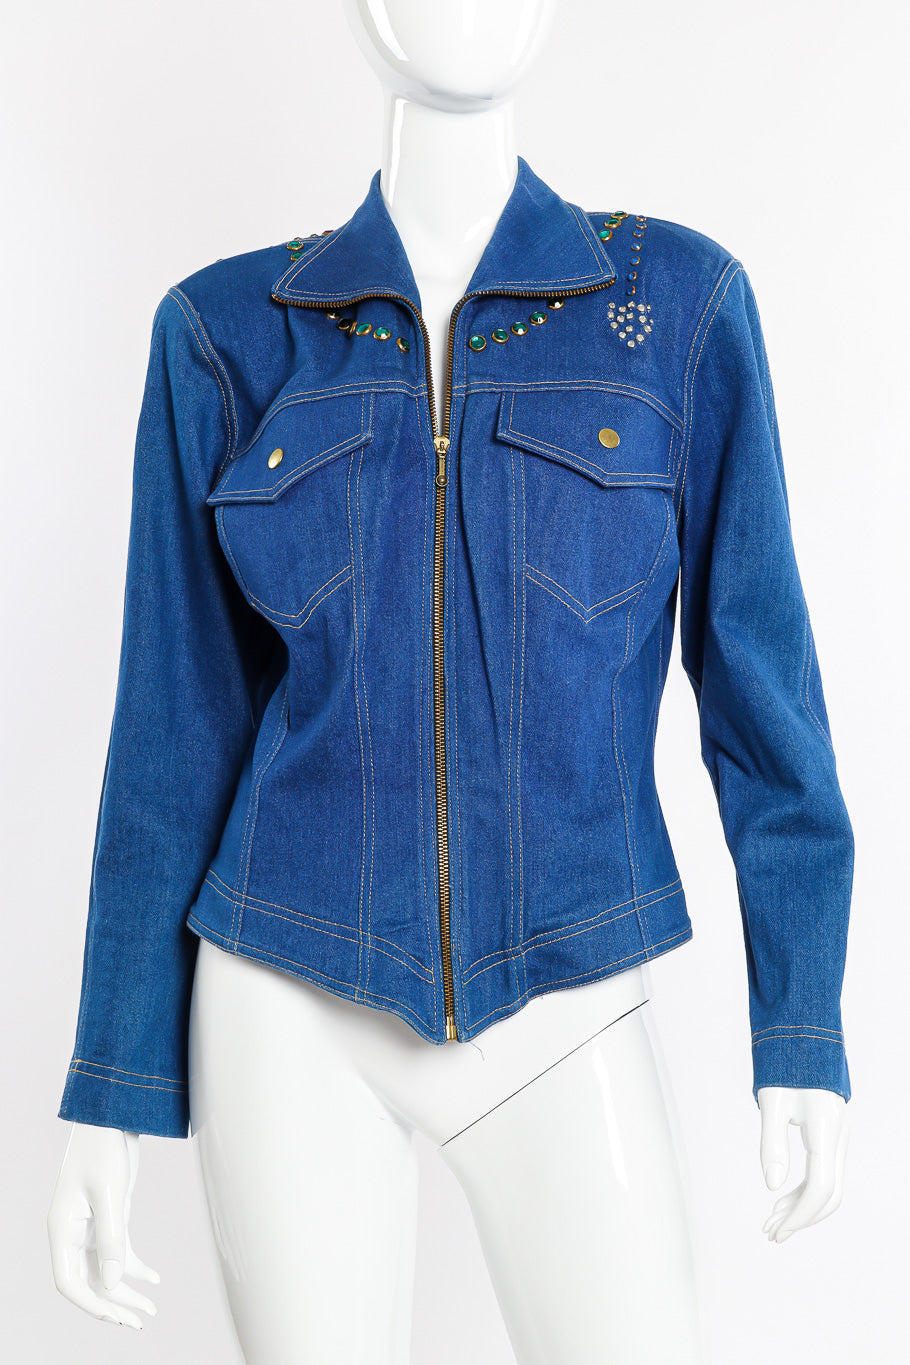 Vintage Lillie Rubin Crystal Studded Denim Jacket front view on mannequin closeup @Recessla